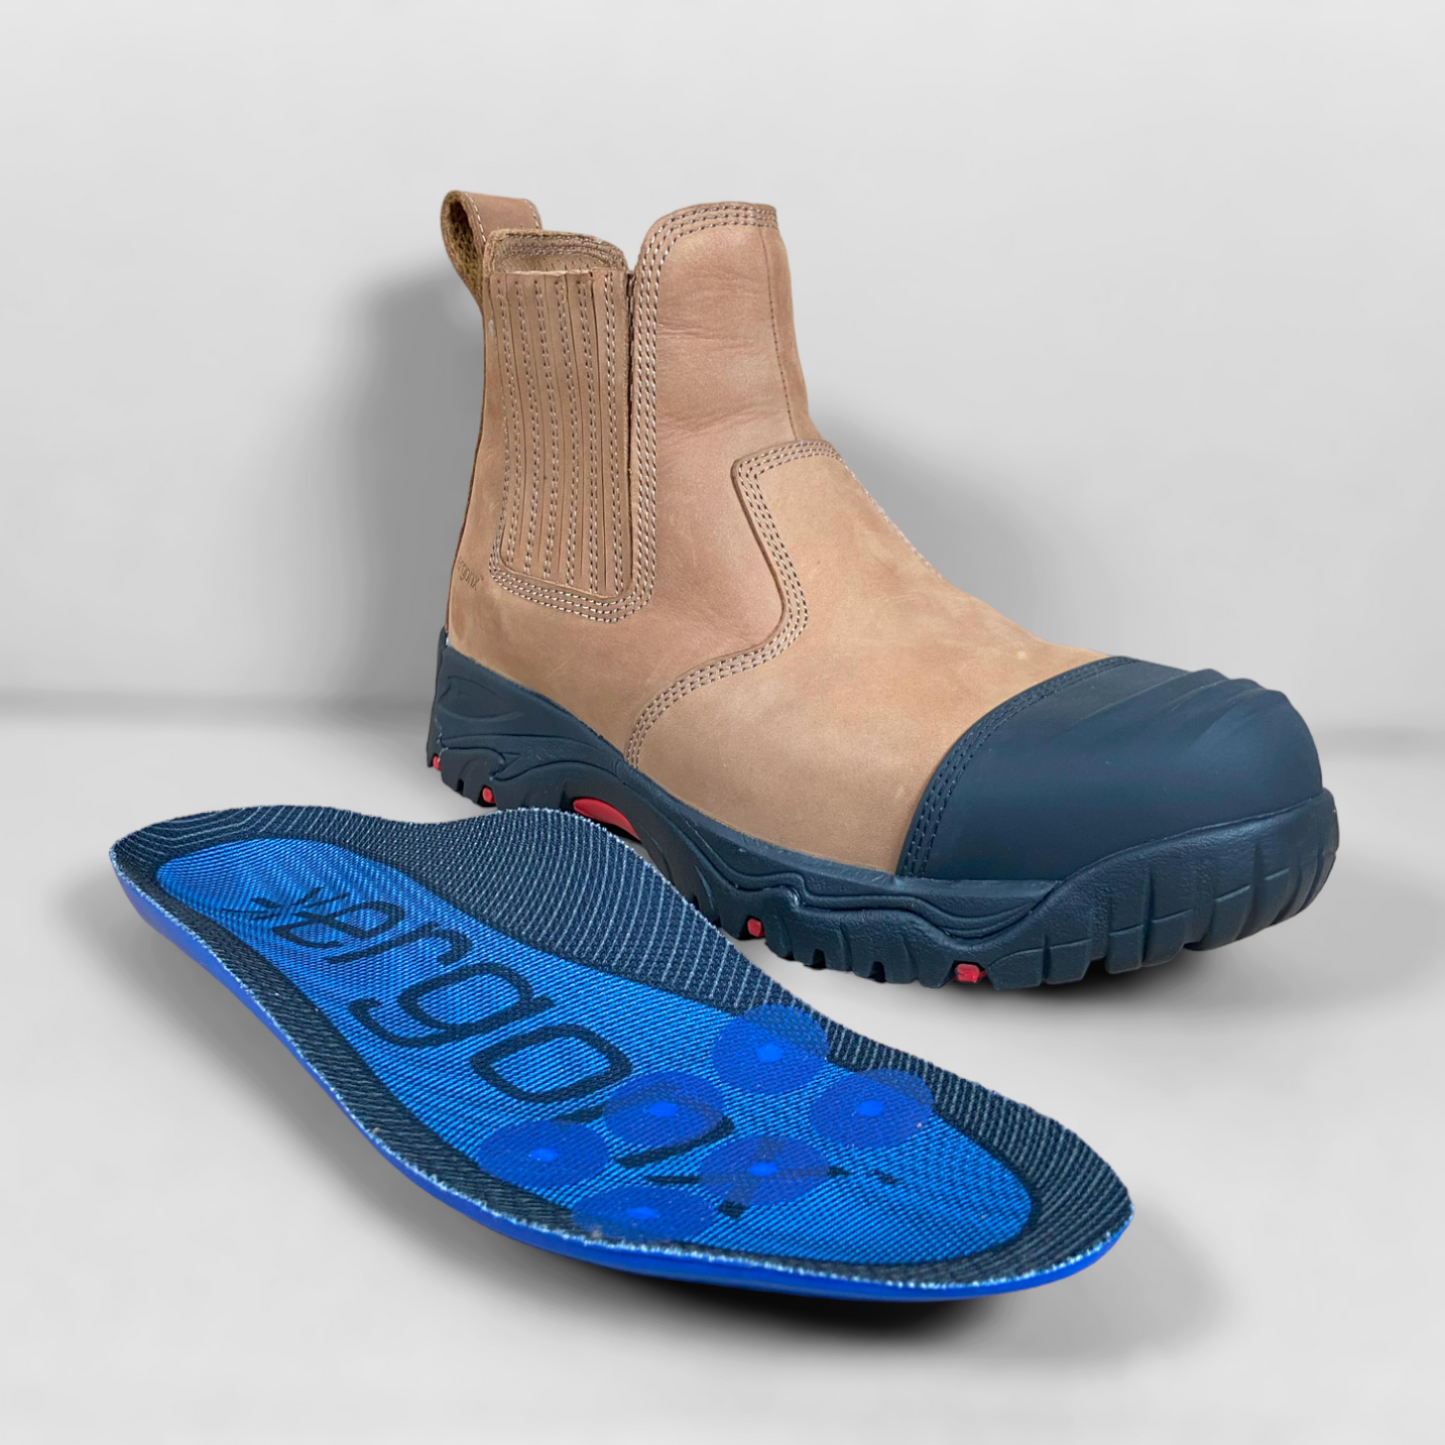 Ergonx Safety Boots Slip On (Hydrogen) Tan